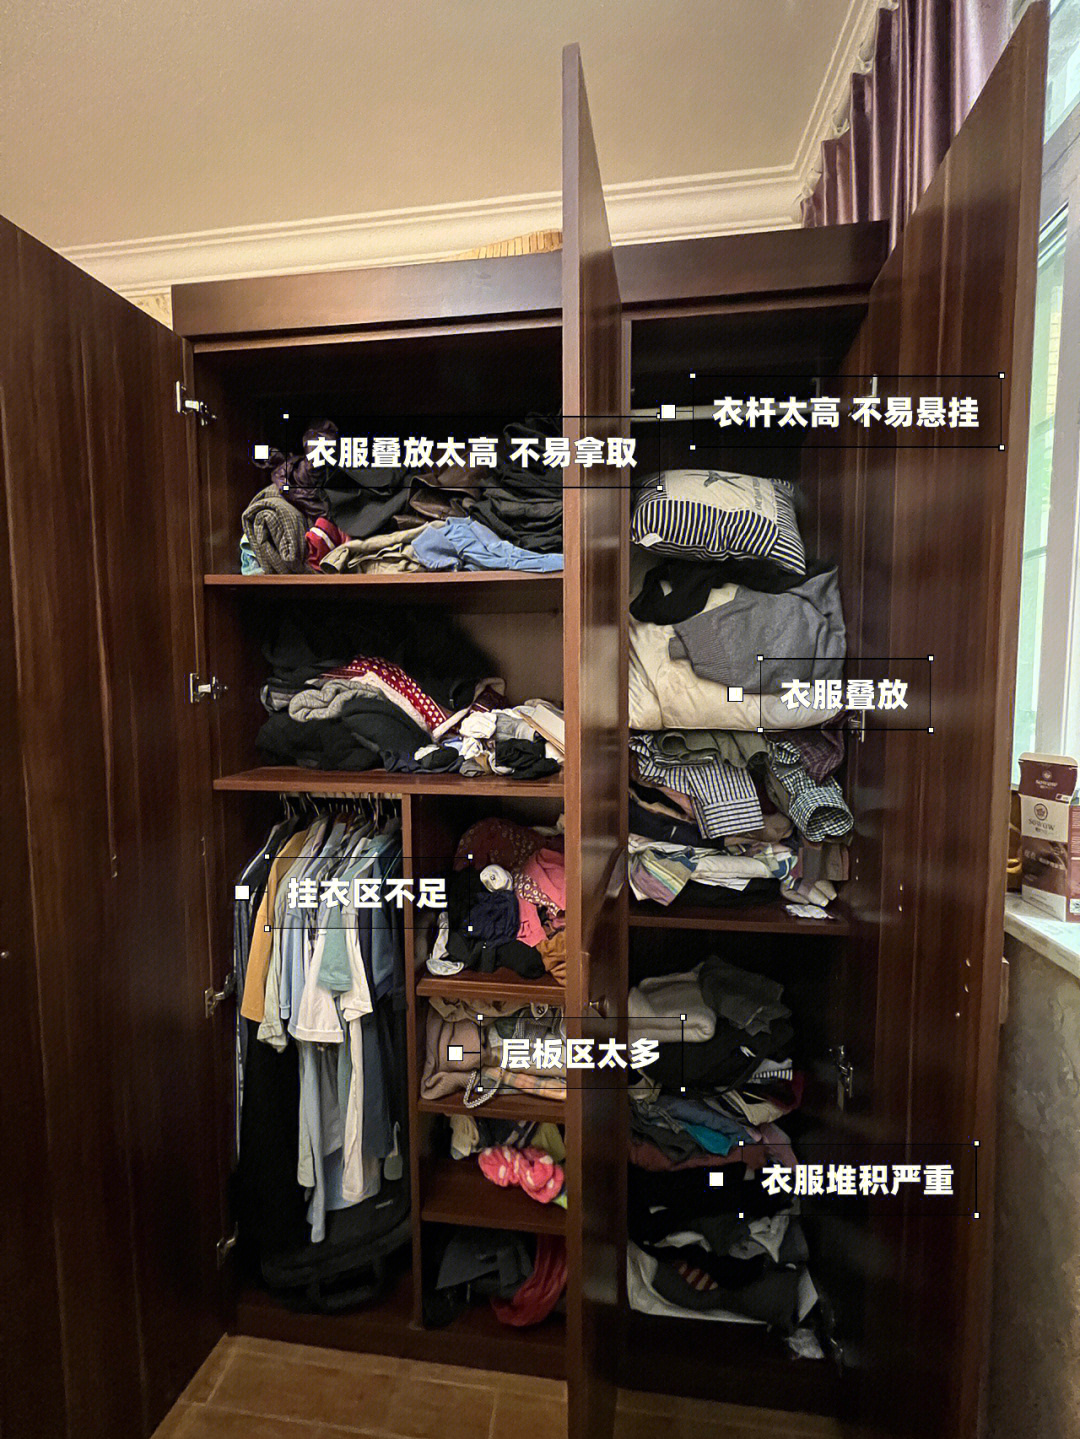 层板区太多,挂衣区只有一个区域,所有在二楼客房衣柜也有他的衣服